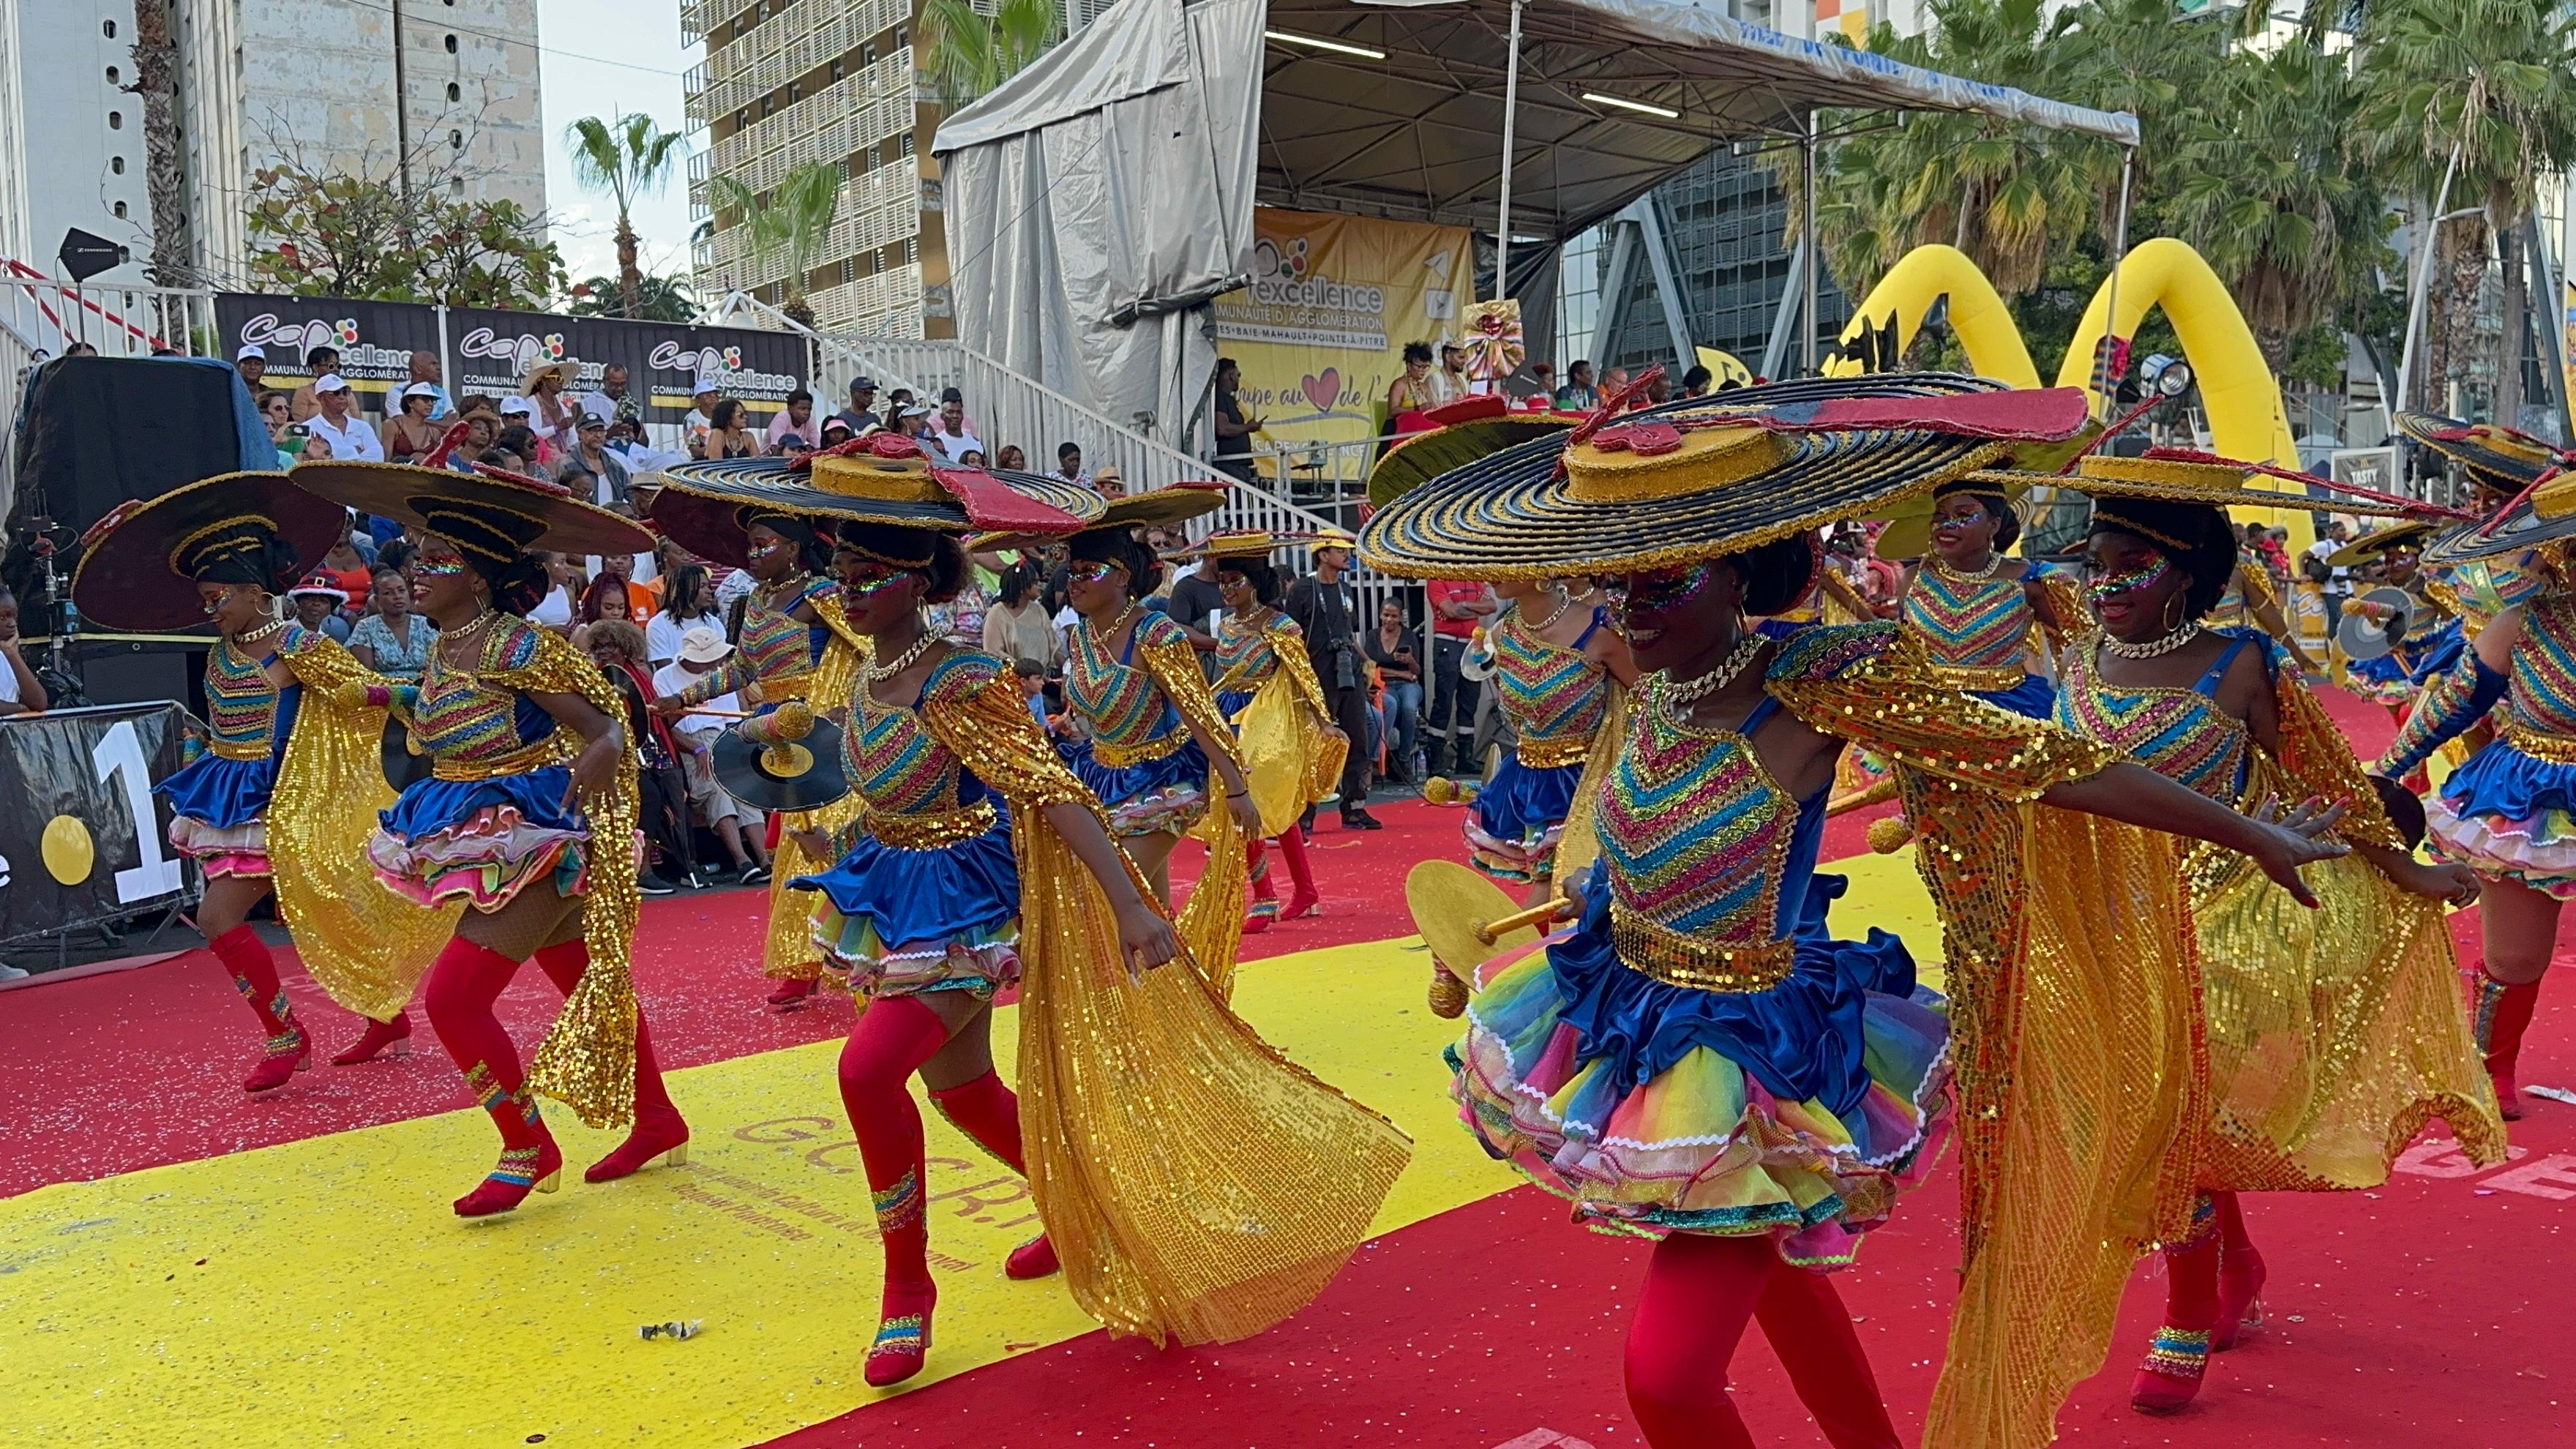     Carnaval : revivez la parade du dimanche gras à Pointe-à-Pitre

